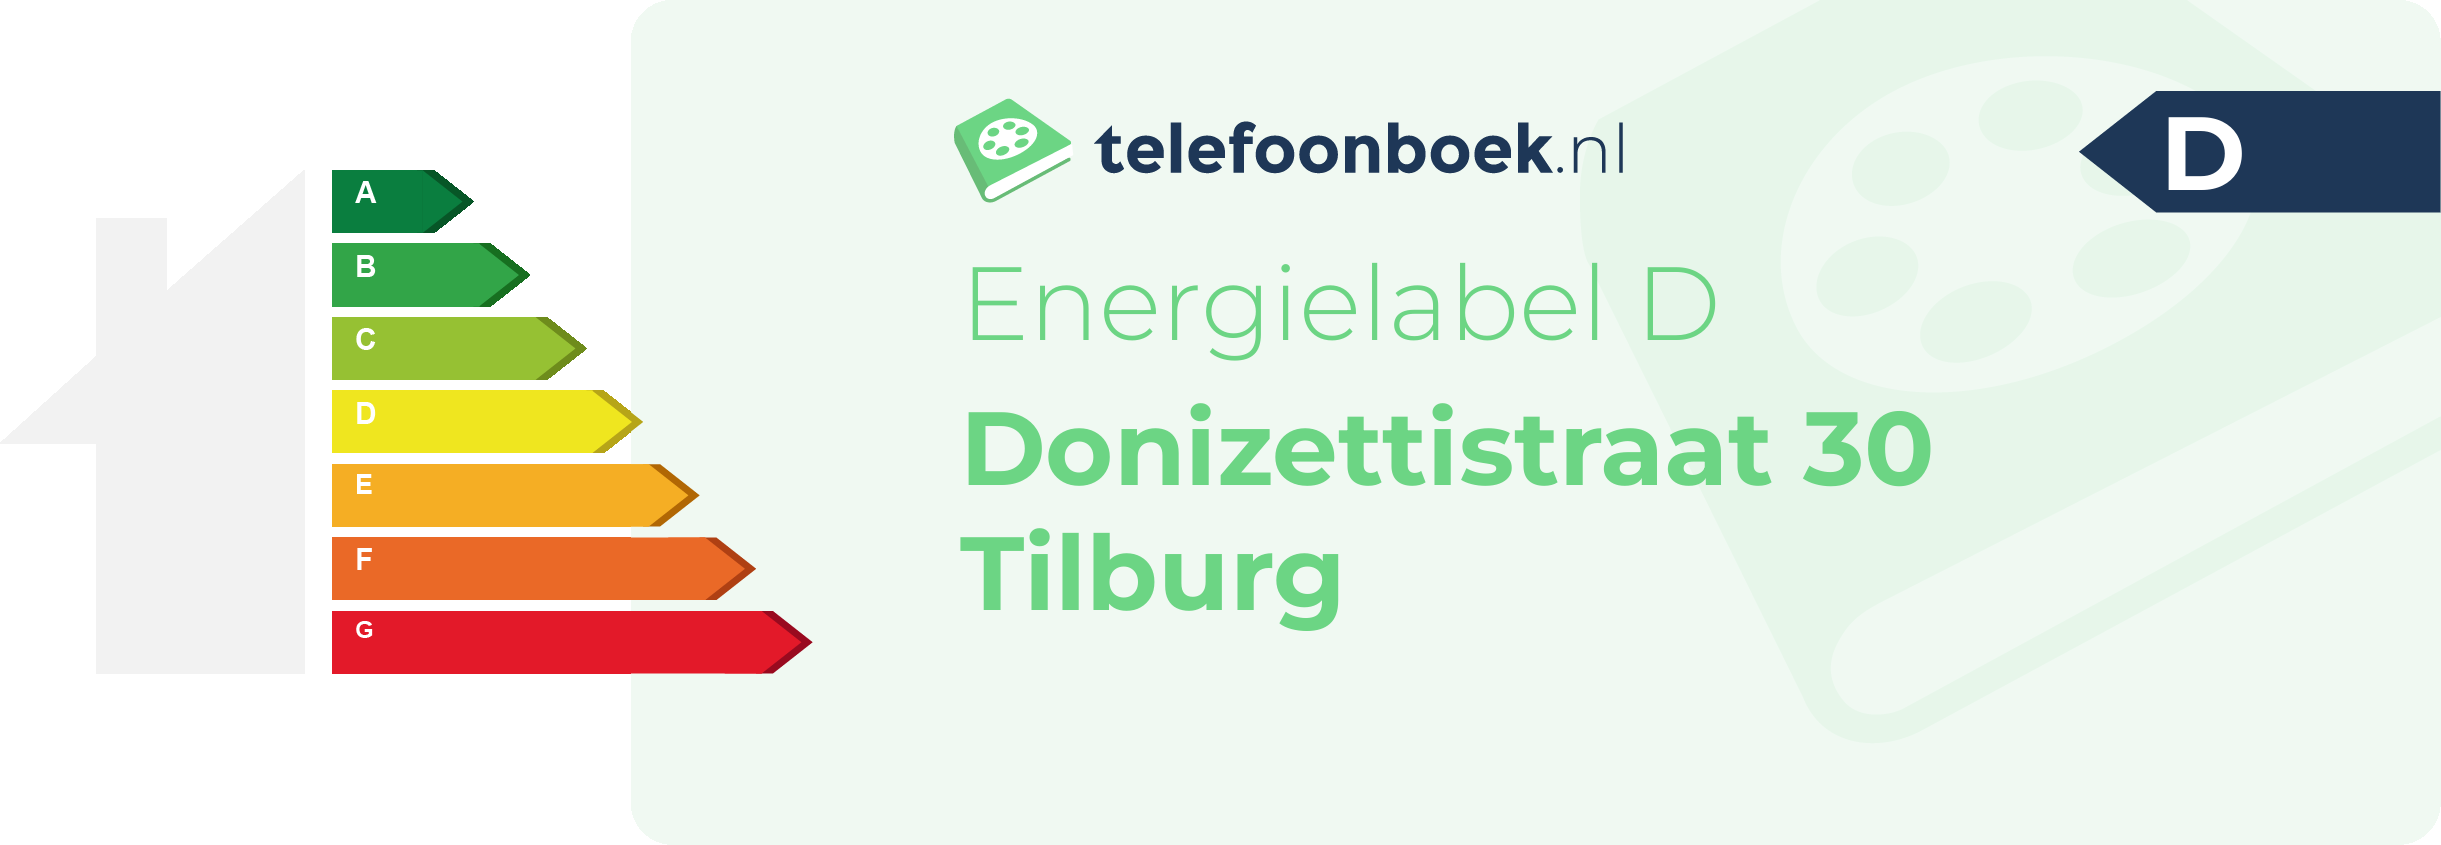 Energielabel Donizettistraat 30 Tilburg